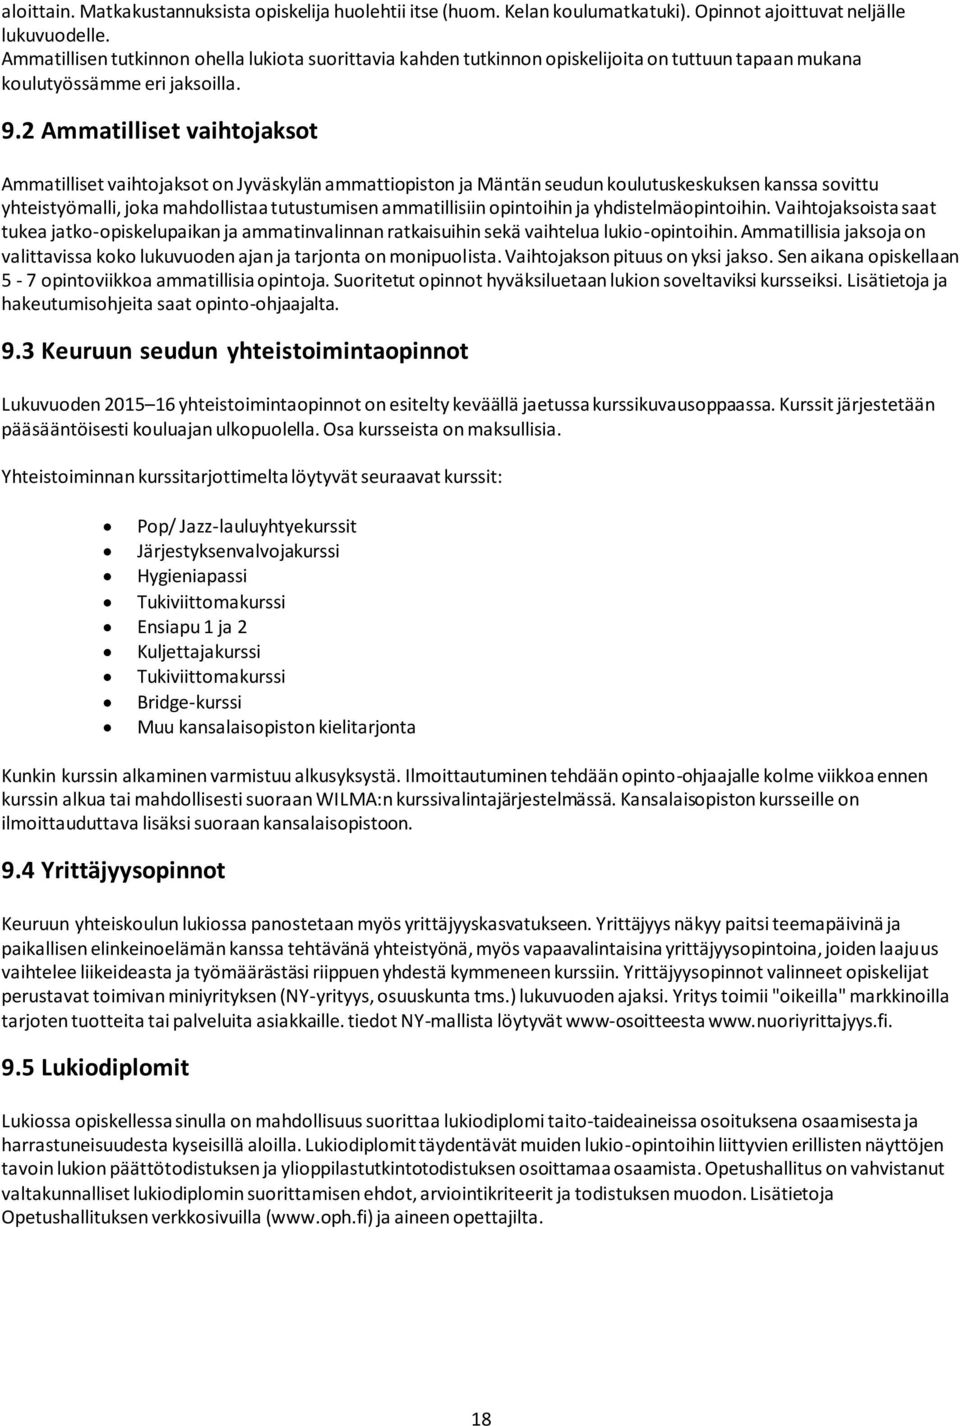 2 Ammatilliset vaihtojaksot Ammatilliset vaihtojaksot on Jyväskylän ammattiopiston ja Mäntän seudun koulutuskeskuksen kanssa sovittu yhteistyömalli, joka mahdollistaa tutustumisen ammatillisiin